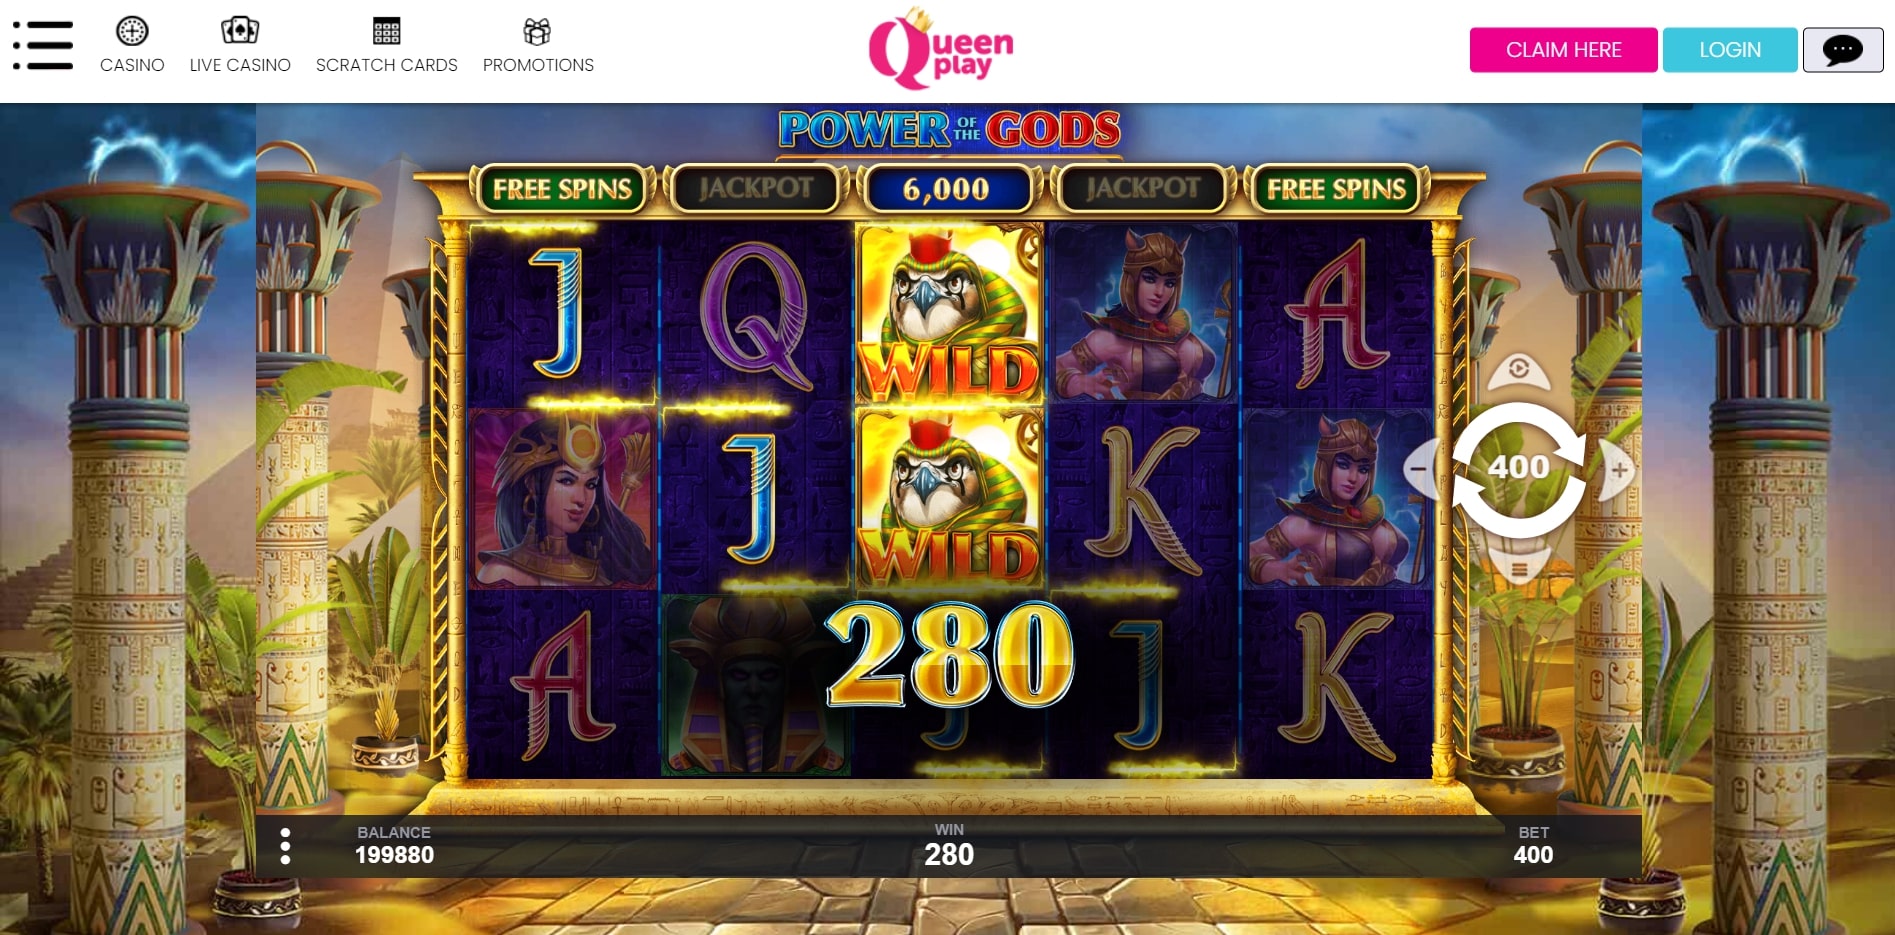 Queen Play Slot Games